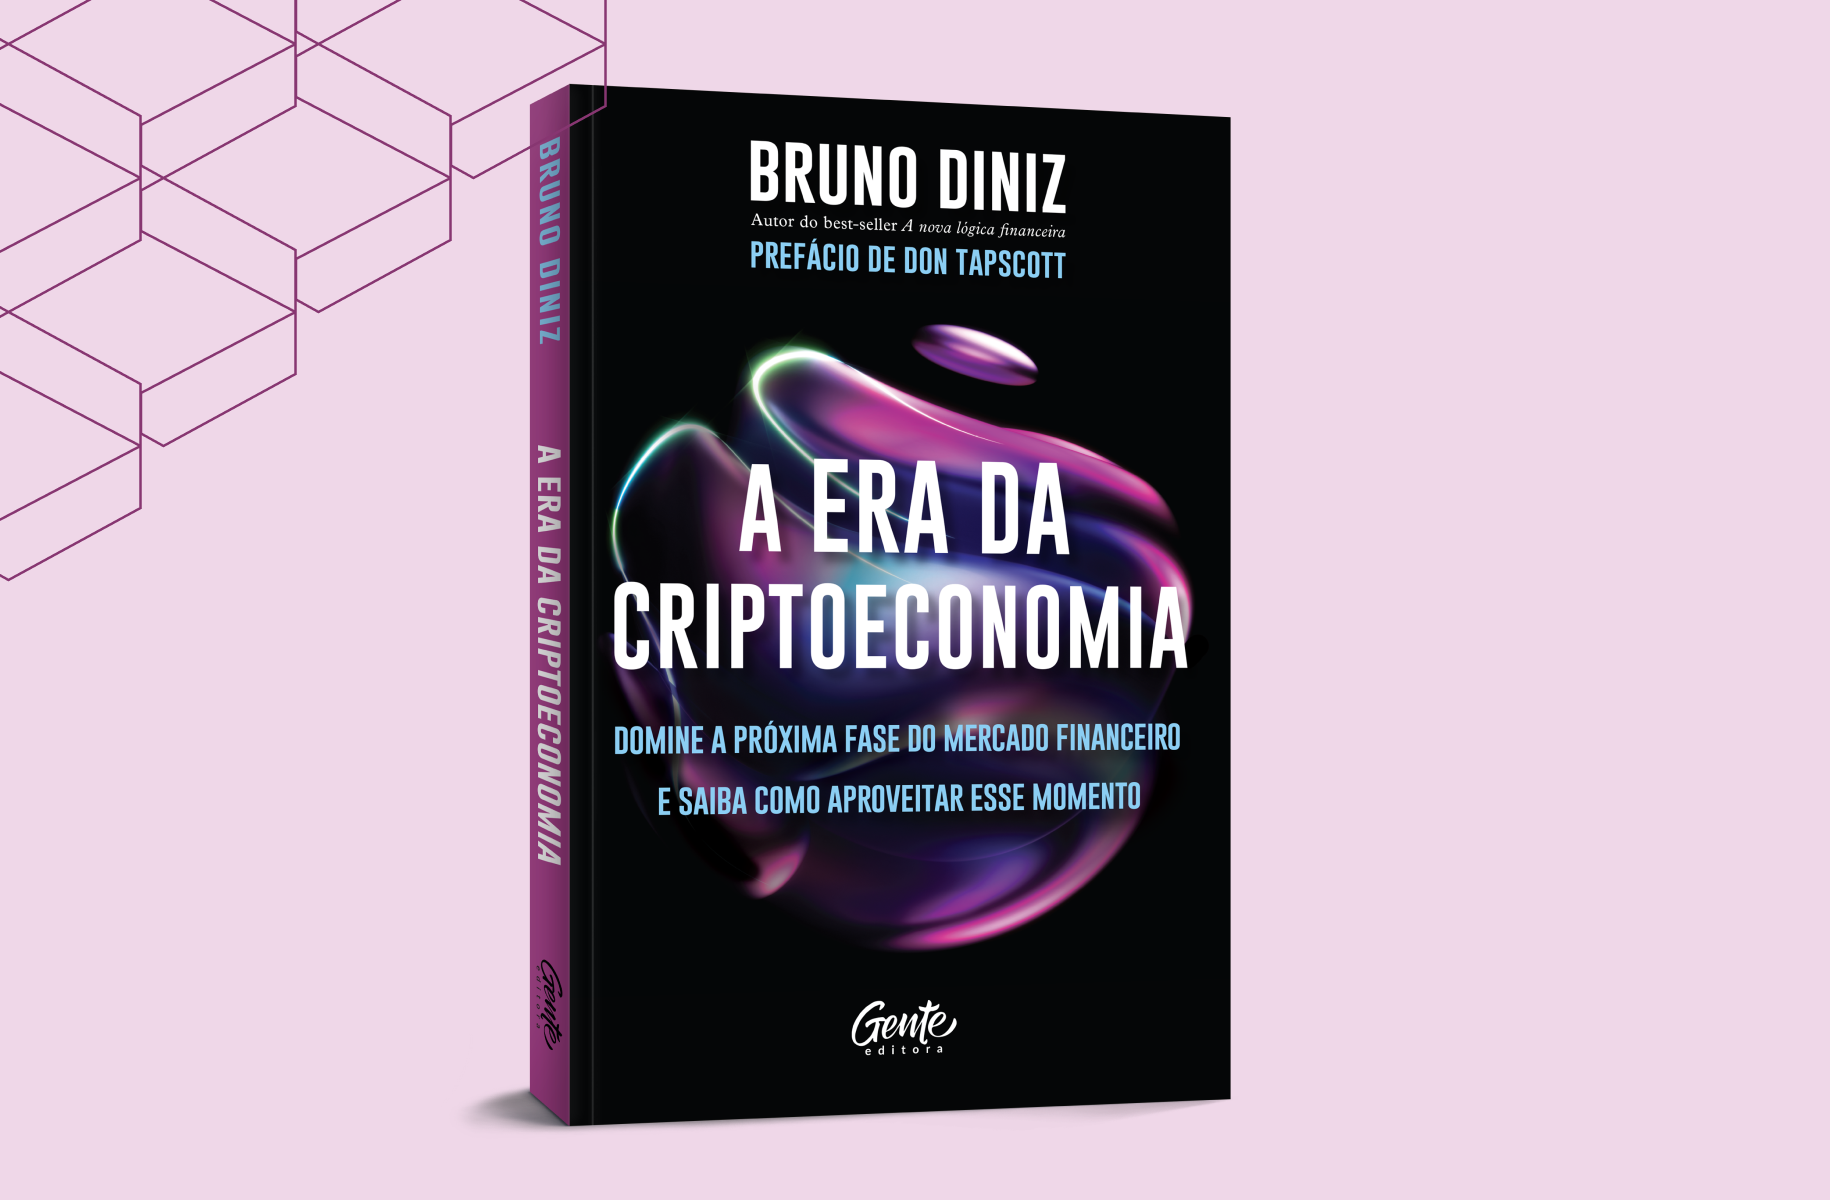 Bruno Diniz